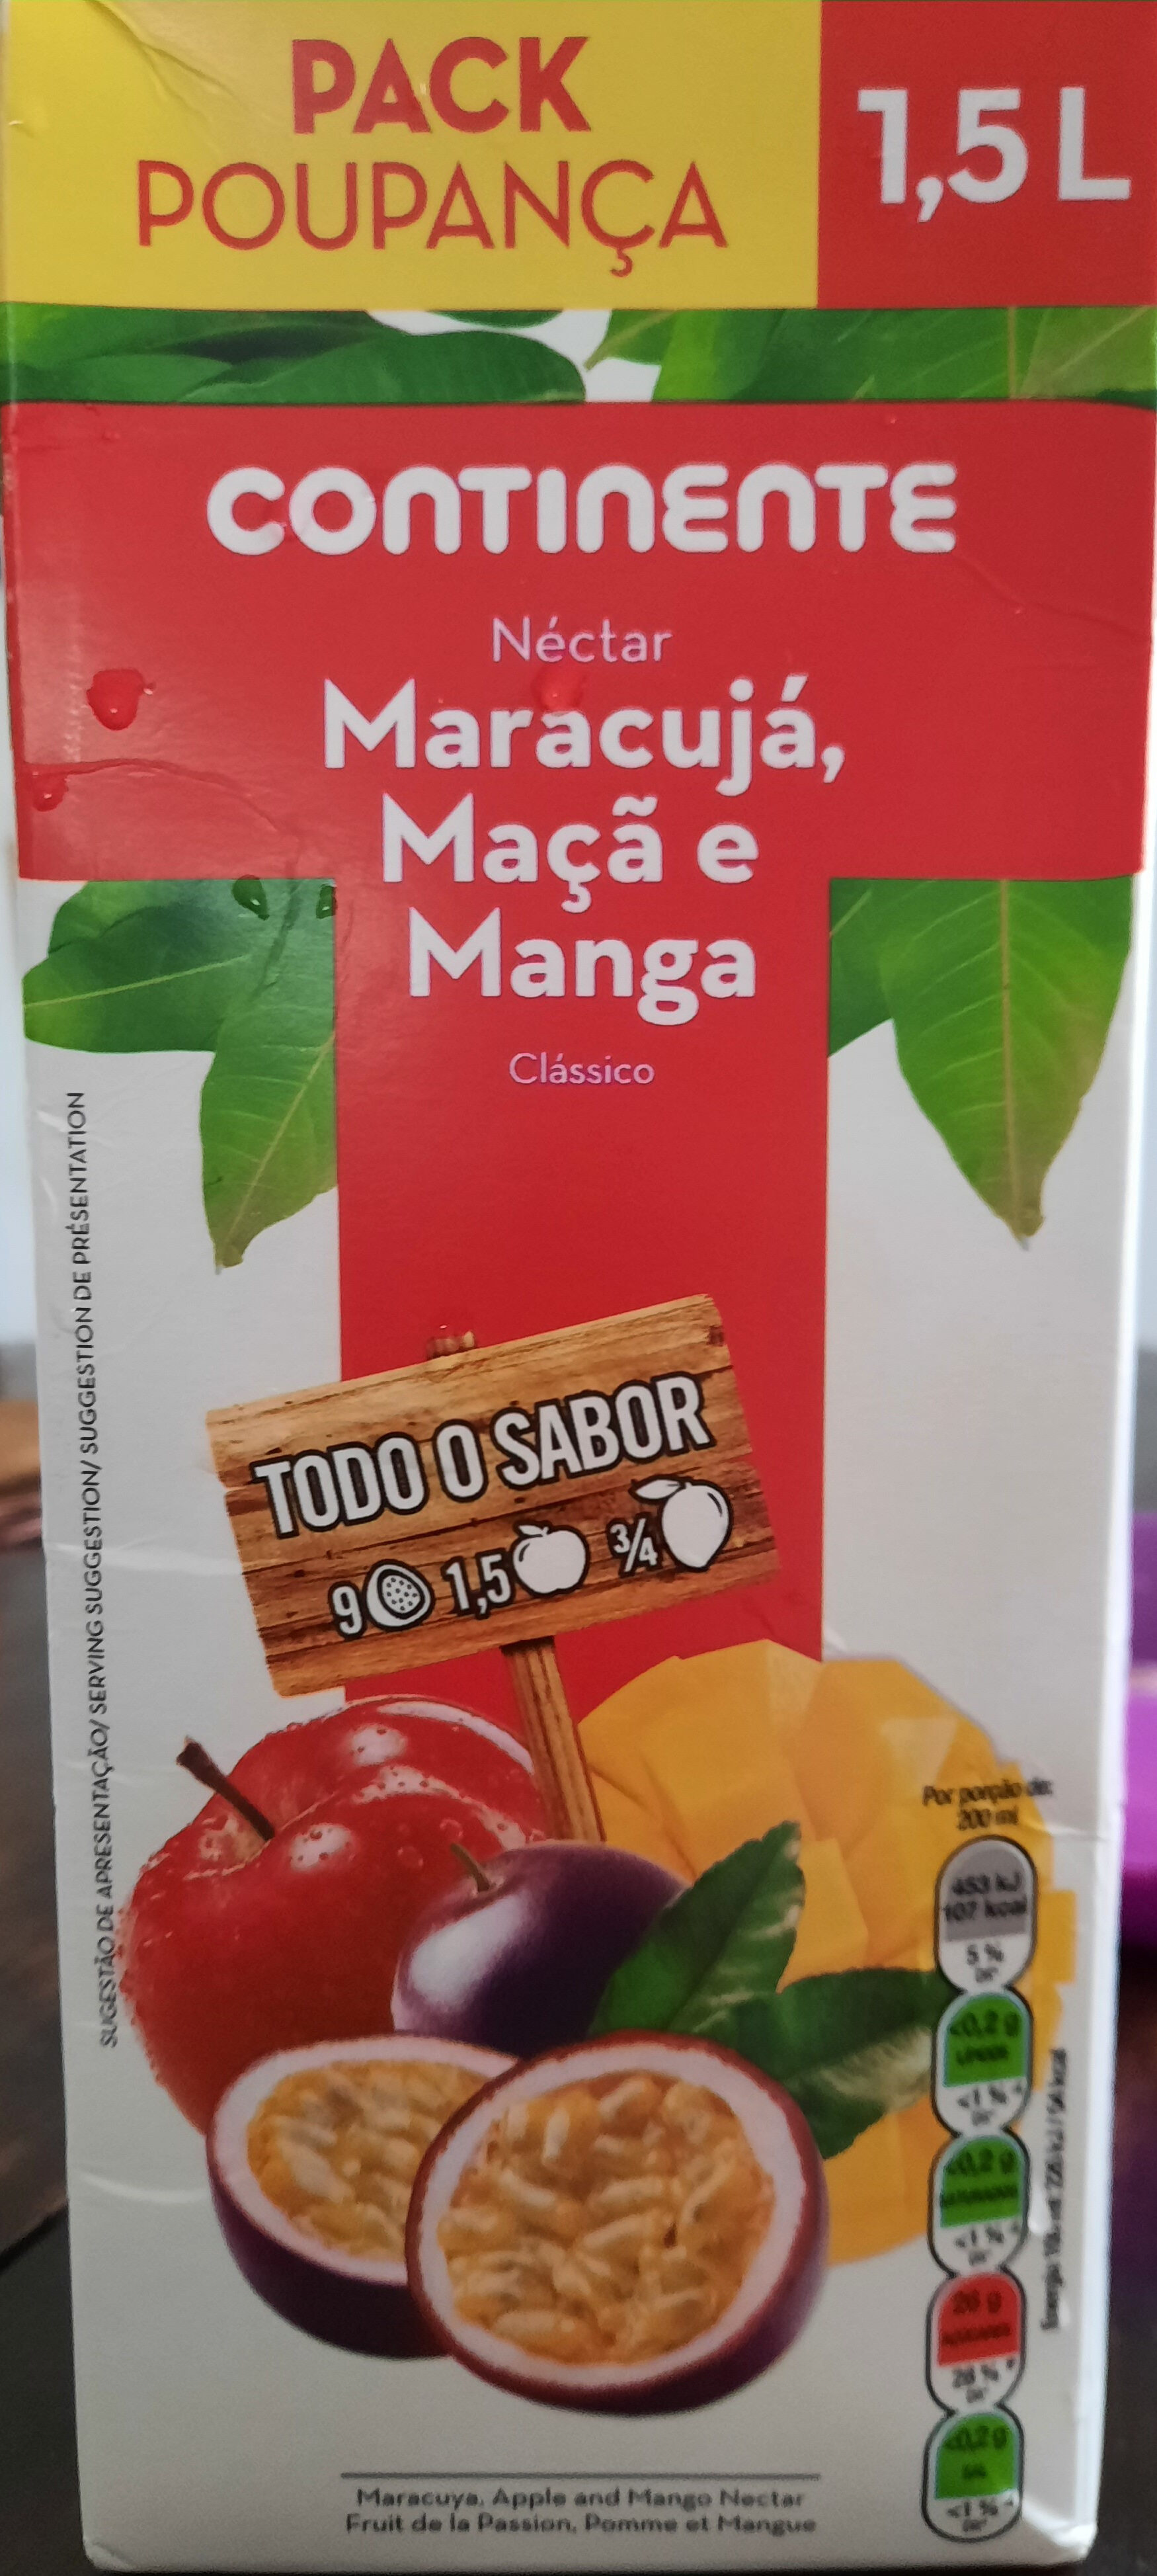 Néctar Maracujá, Maçã e Manga Clássico - Product - pt